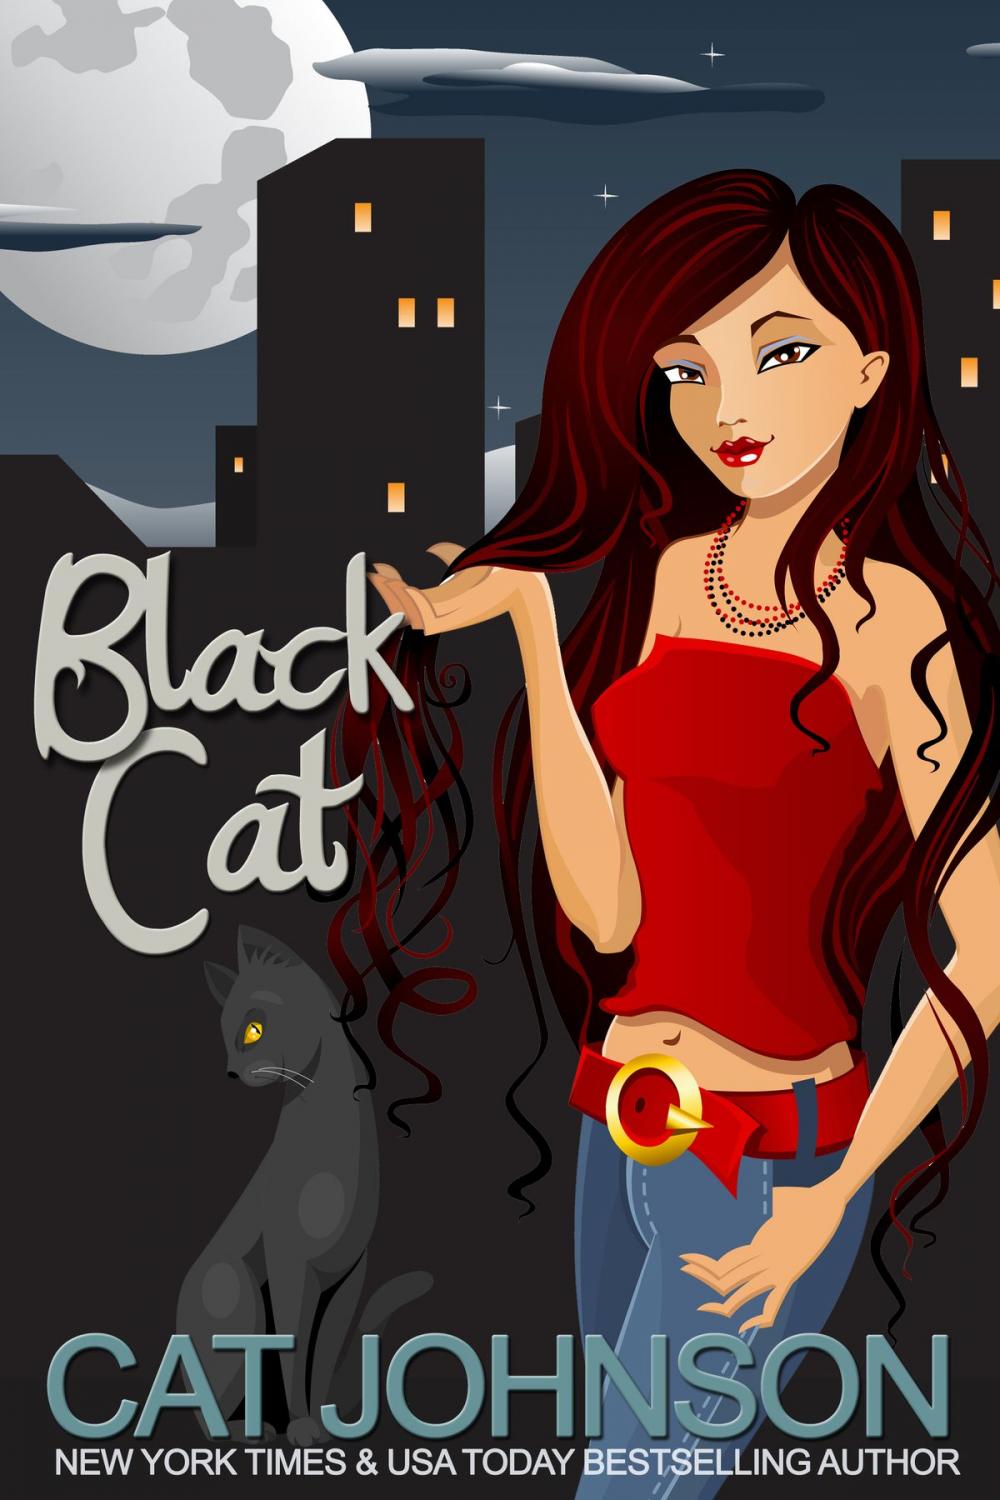 Big bigCover of Black Cat